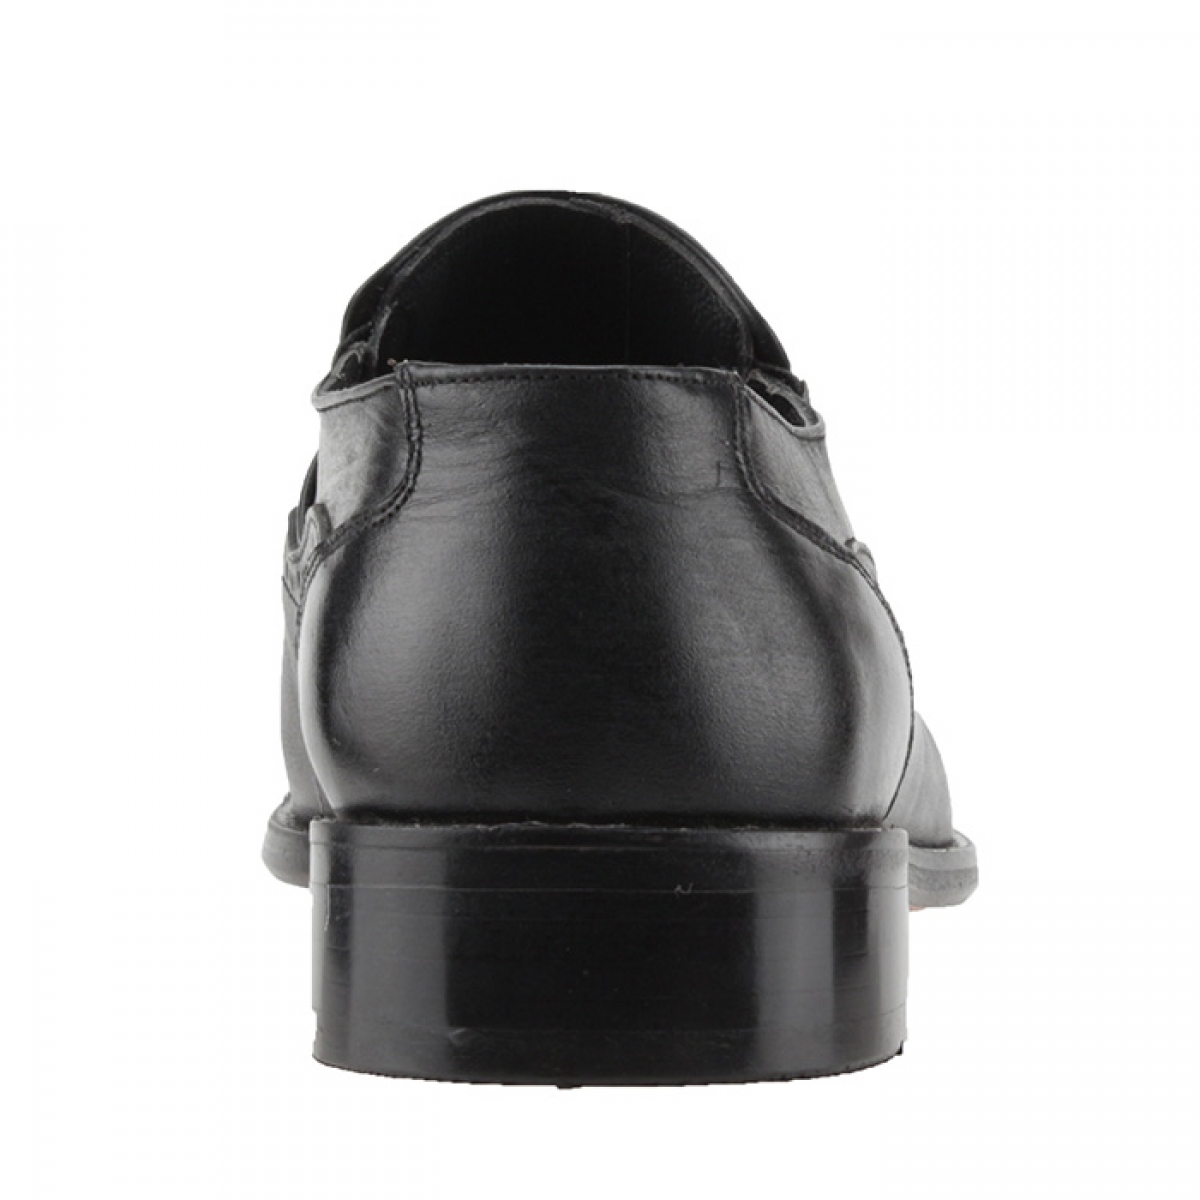 Flo Epaş 13207 Siyah % 100 Deri Günlük Klasik Erkek Ayakkabı. 4